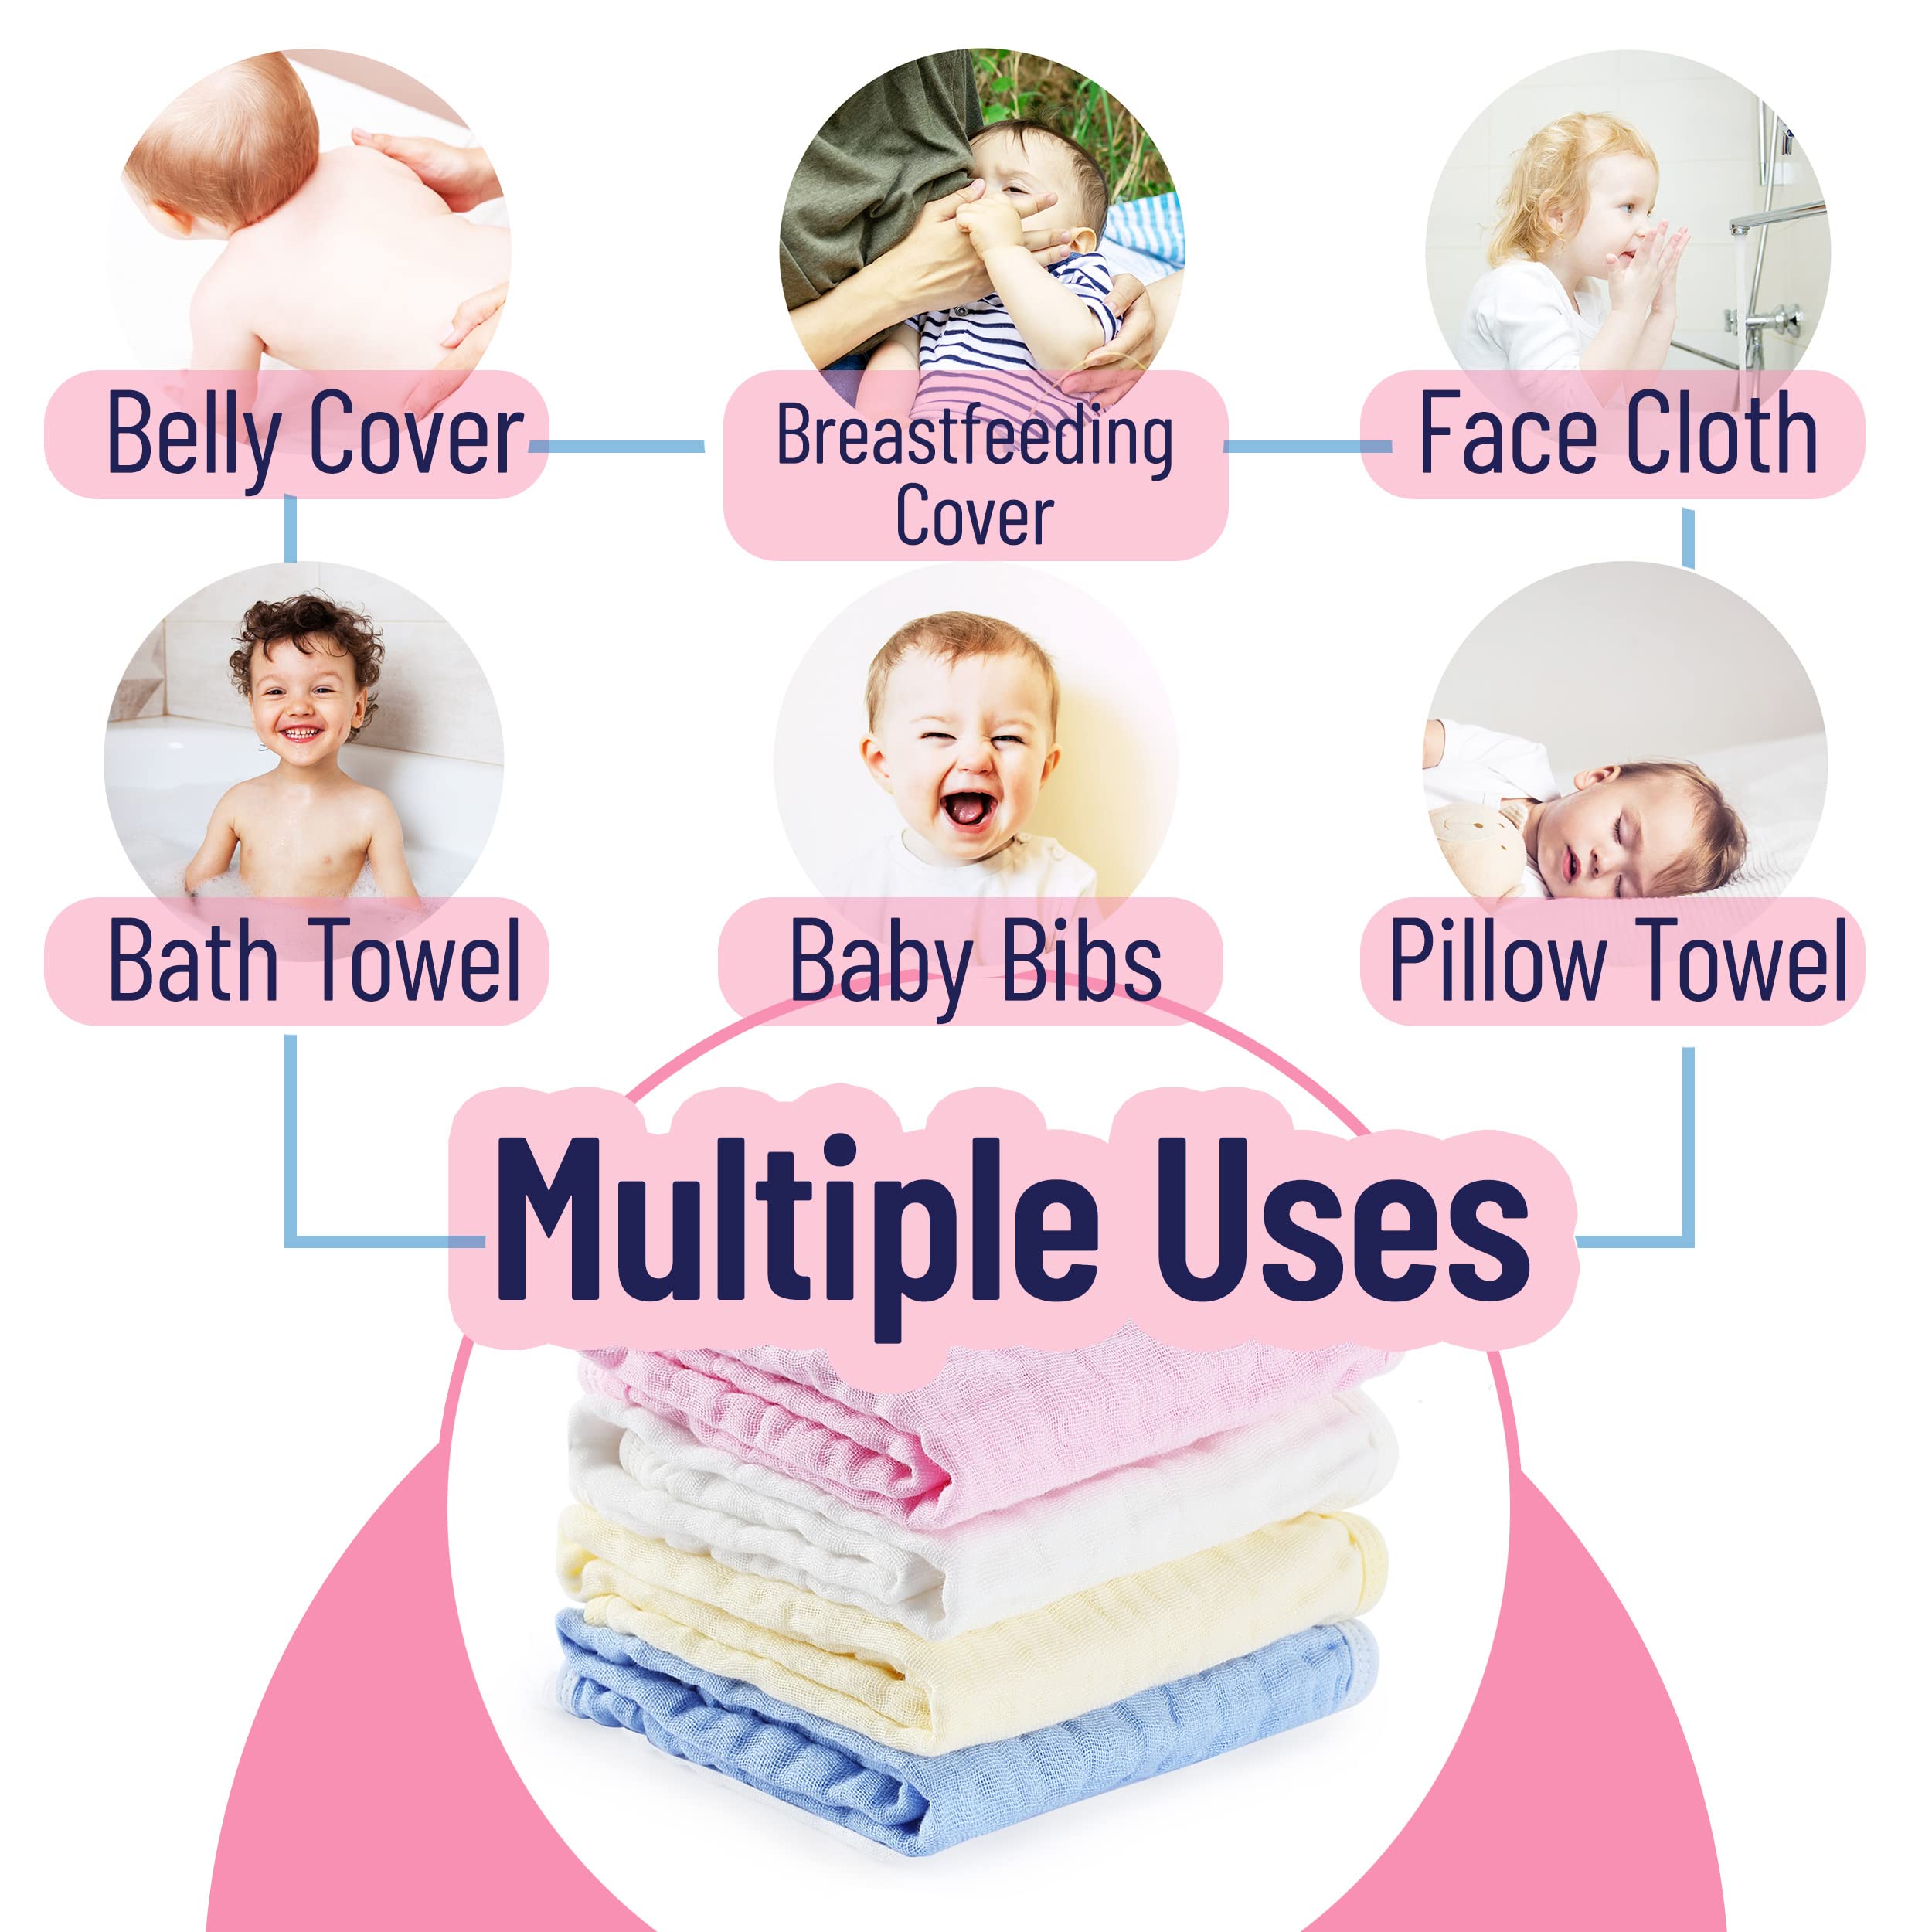 Mr. Pen- Muslin Burp Cloths, 4 Pack, Large, 20” x 11.5”, Colorful Burp Cloths Baby Girl, Burp Cloths Baby Boy, Burping Cloths for Babies, Burp Cloths, Muslin Washcloths, Burp Clothes